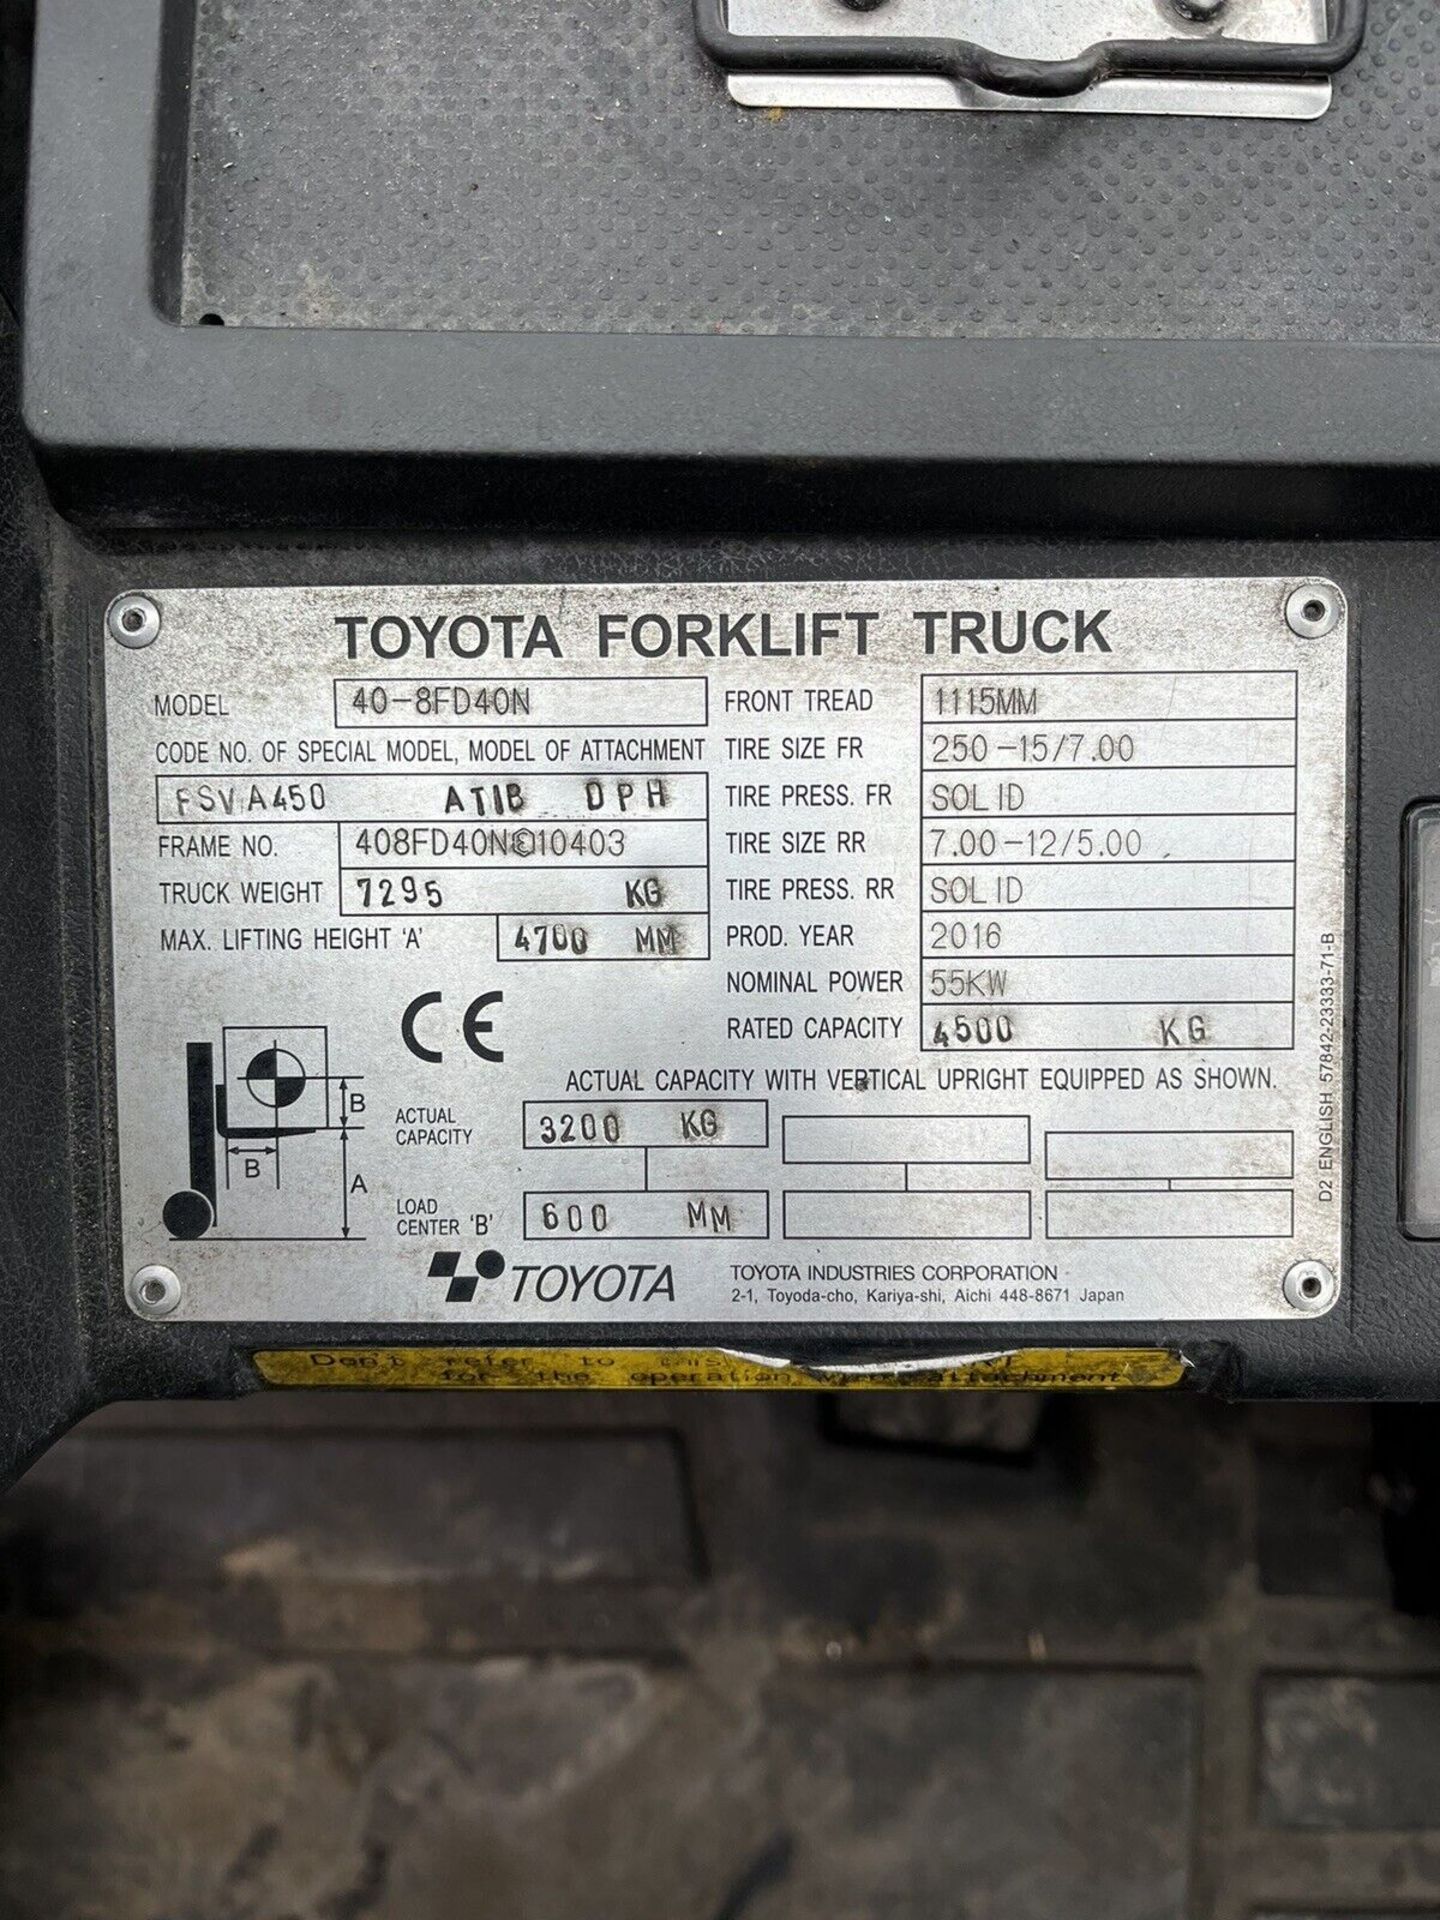 2016, TOYOTA 40-8FD40N - 4 Tonne Diesel Forklift (4.5 Tonne at 500 Load Center) - Bild 5 aus 8